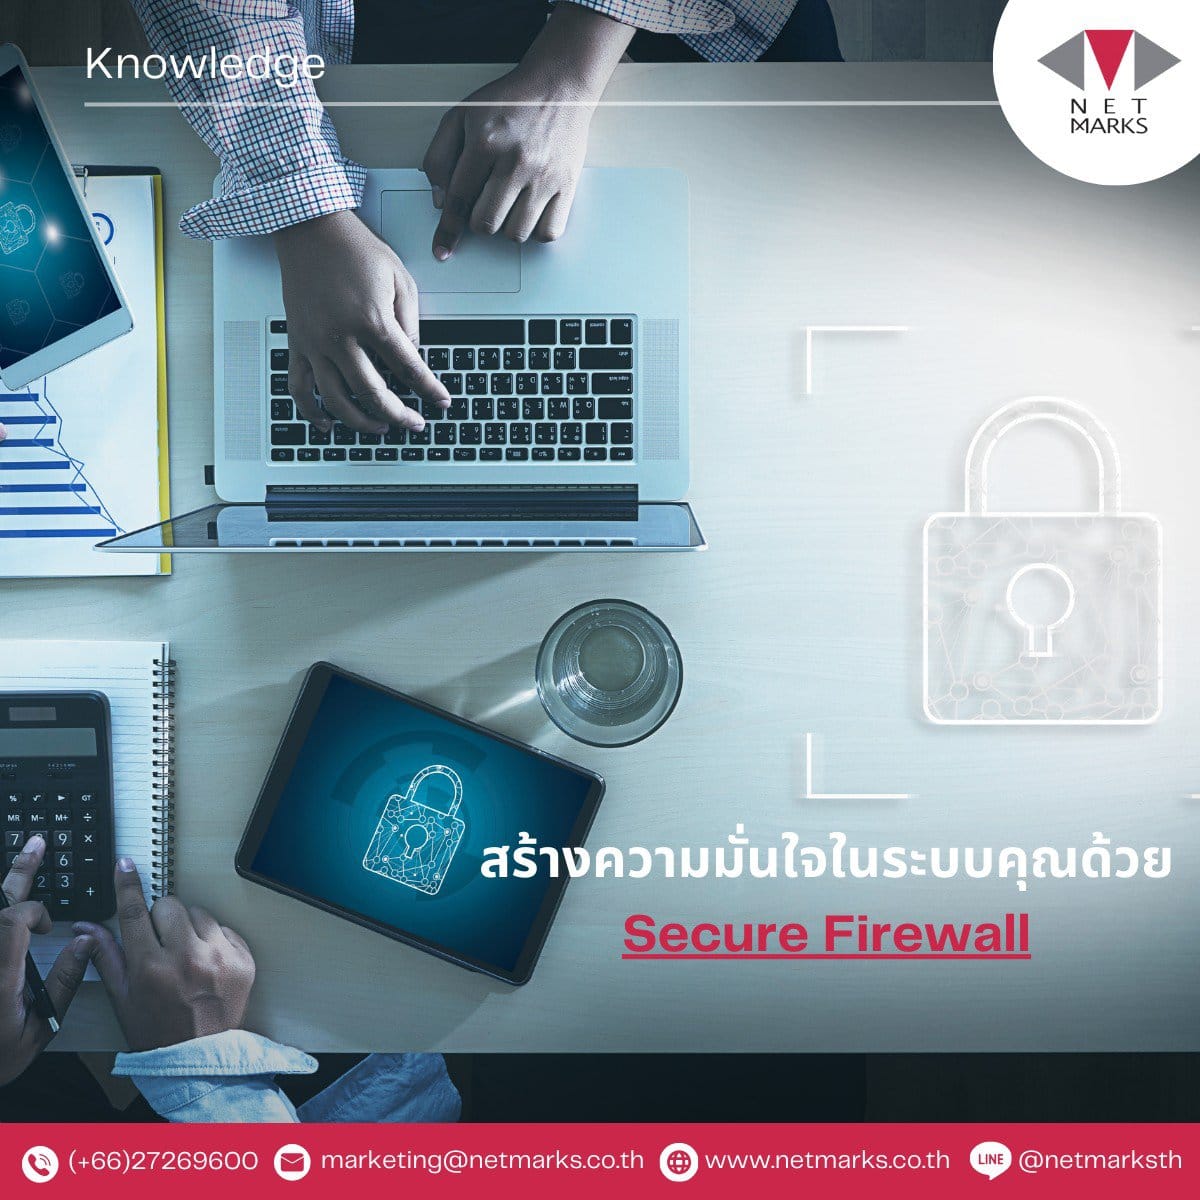 Secure Firewall ไม่เพียงเป็นเทคโนโลยีระบบป้องกันไฟวอลล์ที่เสริมความปลอดภัยของระบบเครือข่าย แต่ยังเป็นเครื่องมือที่ทำให้ระบบของคุณพร้อมที่จะรับมือกับทุกความเสี่ยงและภัยคุกคามที่อาจเกิดขึ้น